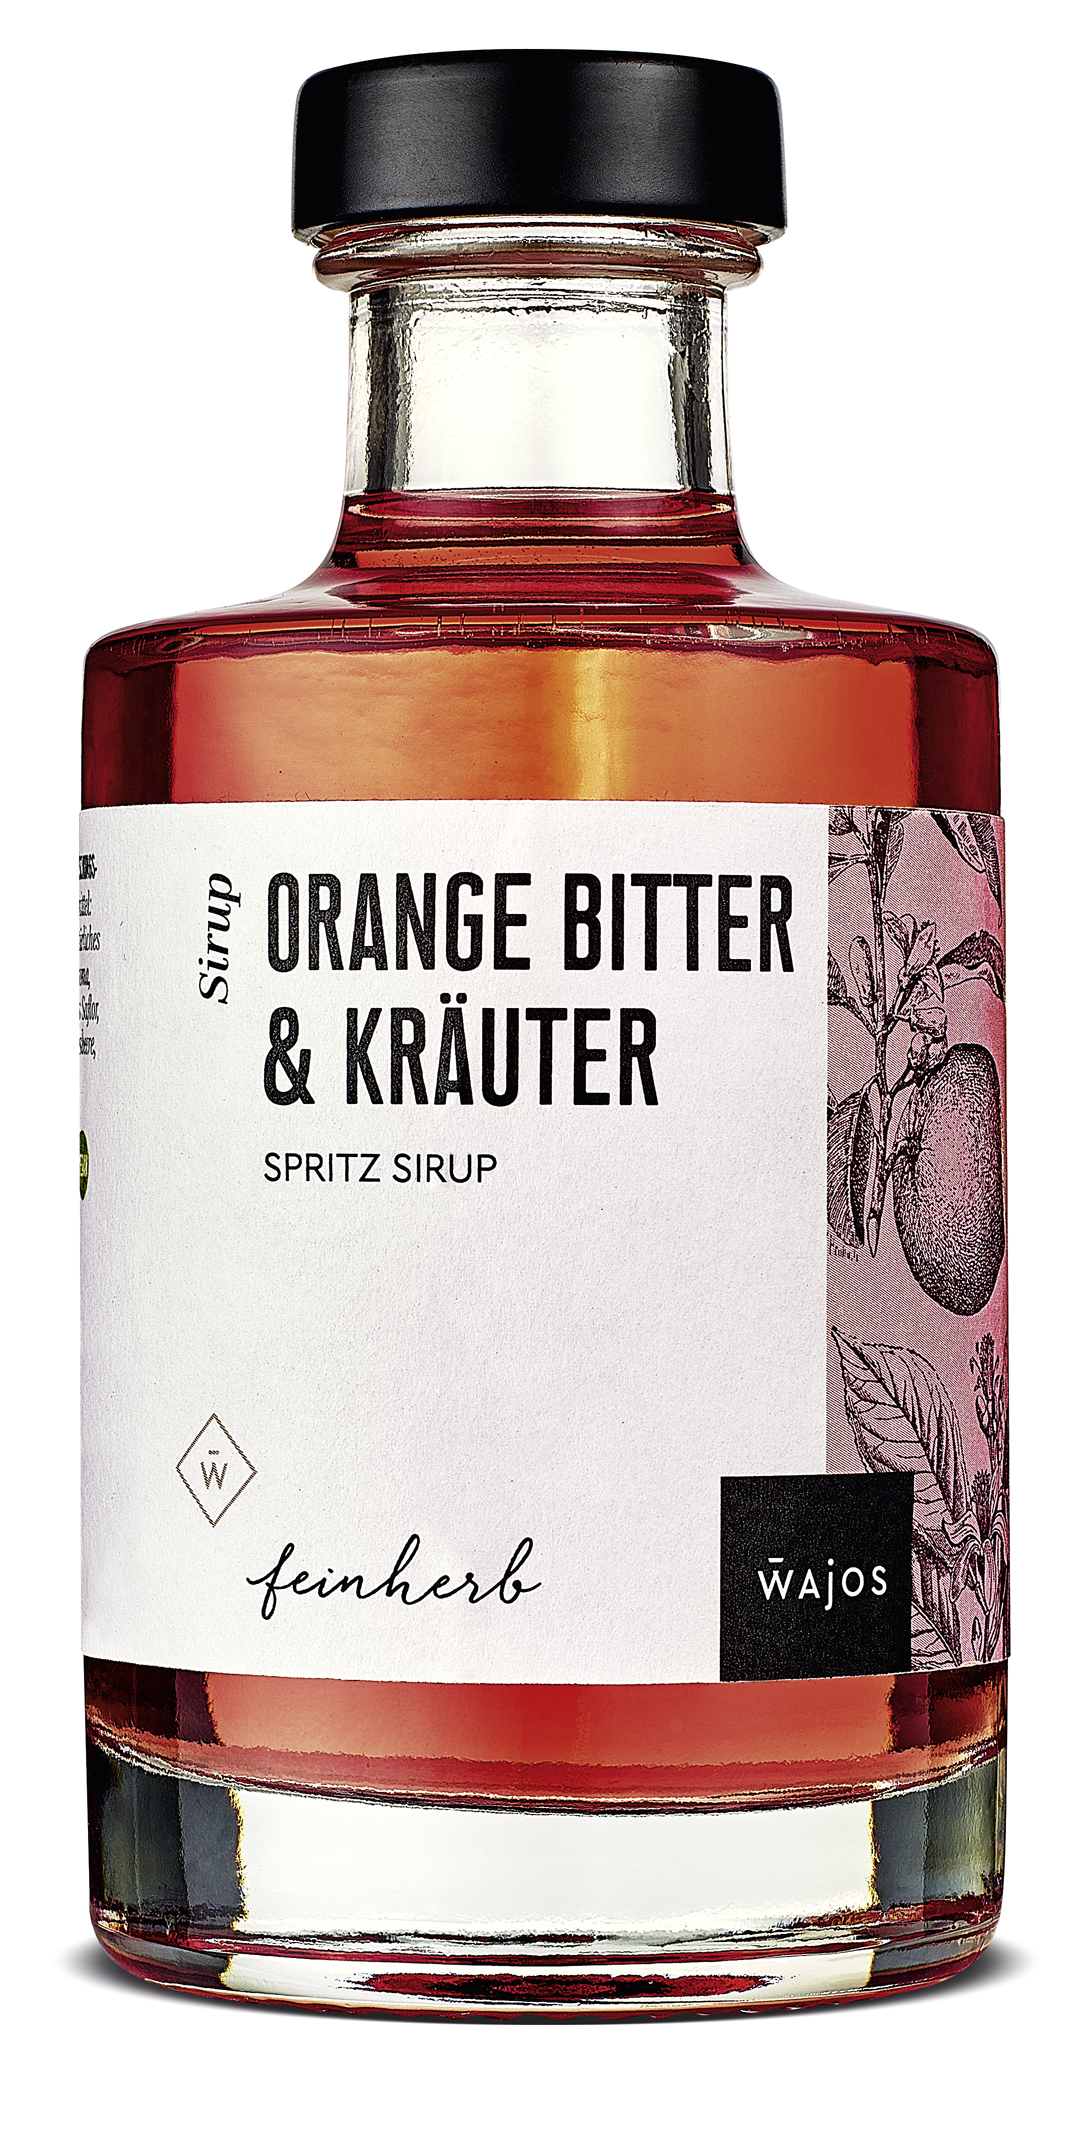 »Orange Bitter & Kräuter« Sprizz Sirup